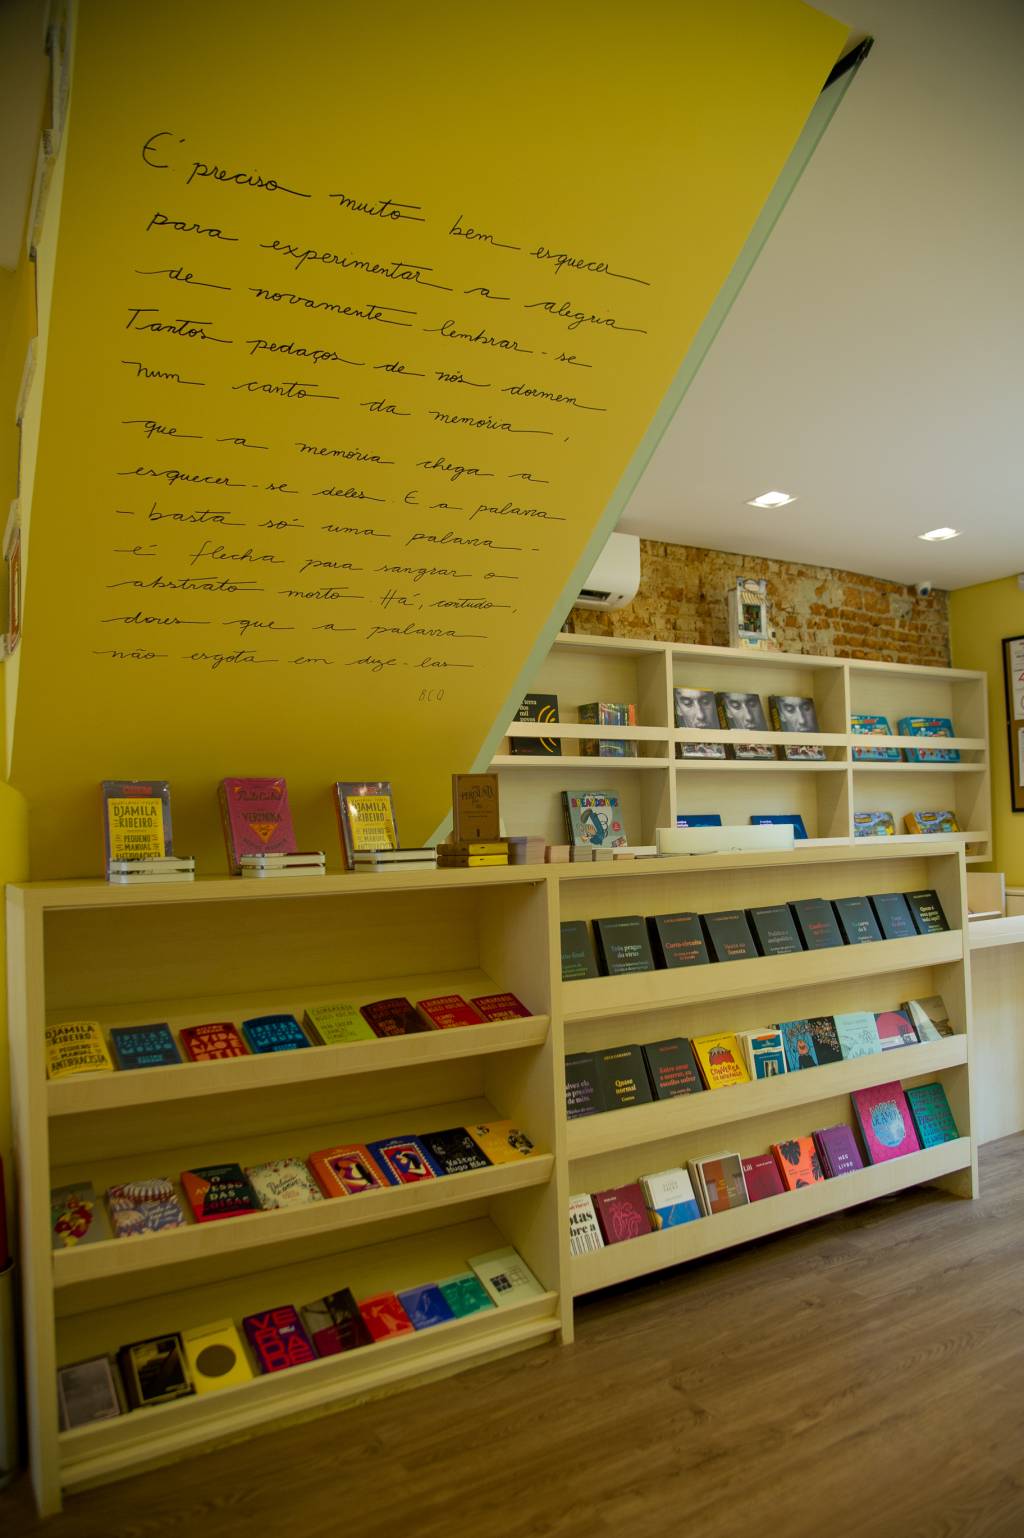 Foto exibe teto na diagonal com grande texto escrito na parede branca. Abaixo, grande prateleira de madeira com livros.